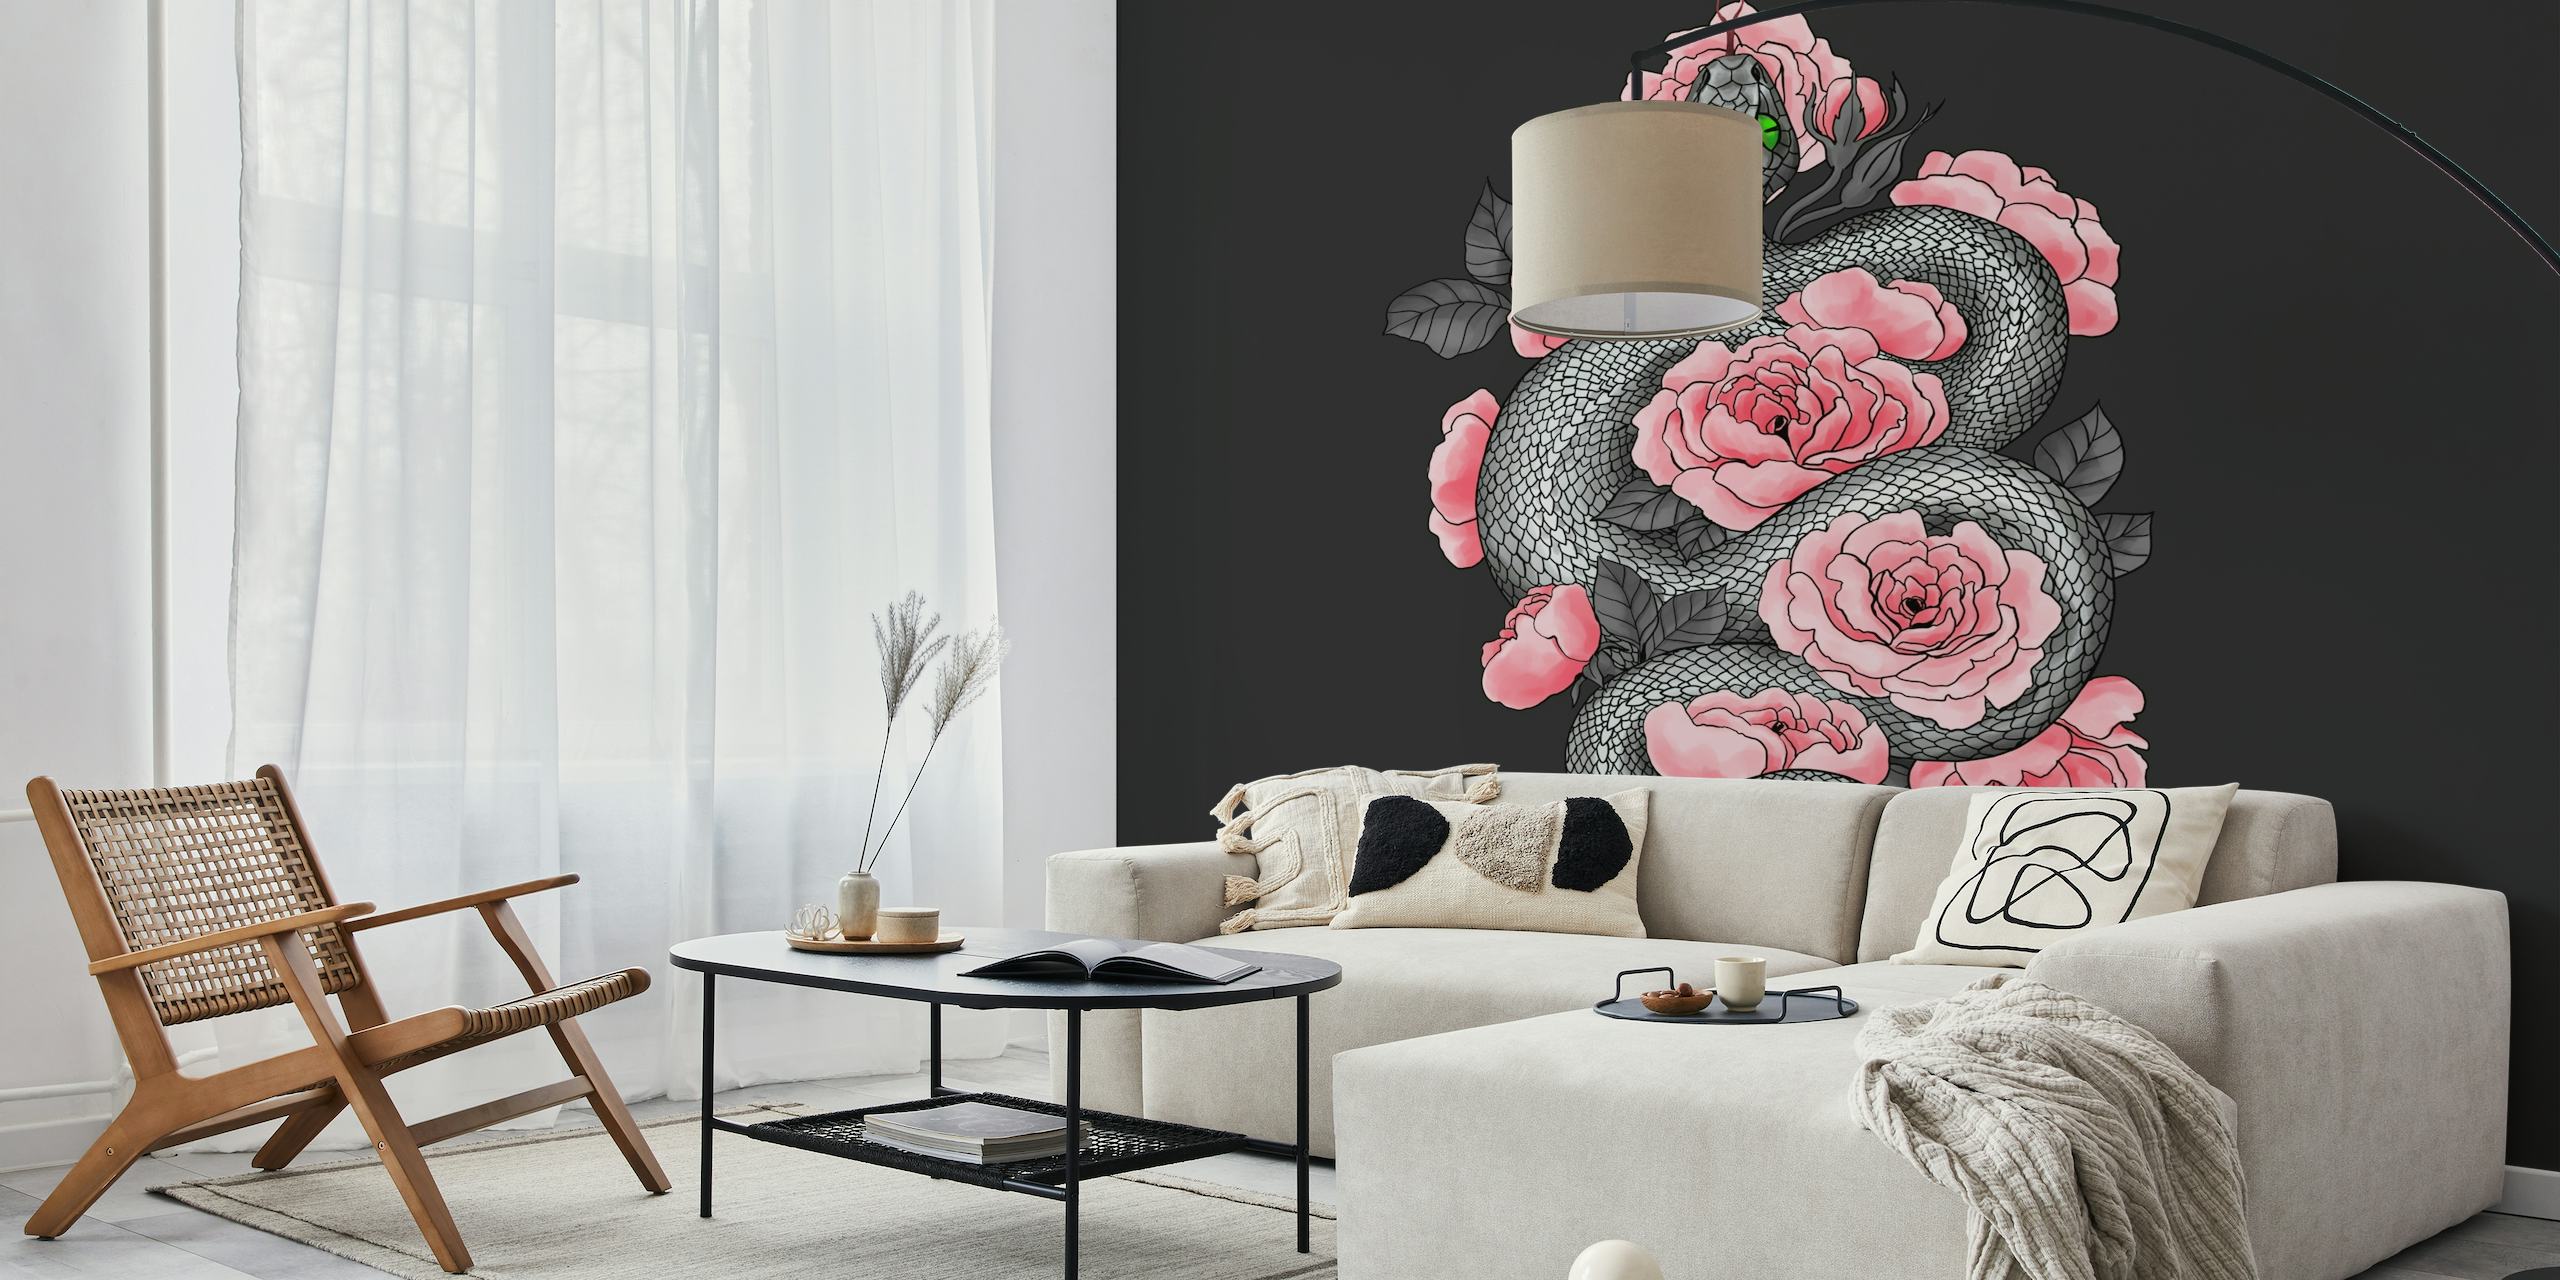 Ein Wandbild mit einer Schlange zwischen pfirsichfarbenen Rosen auf dunklem Hintergrund